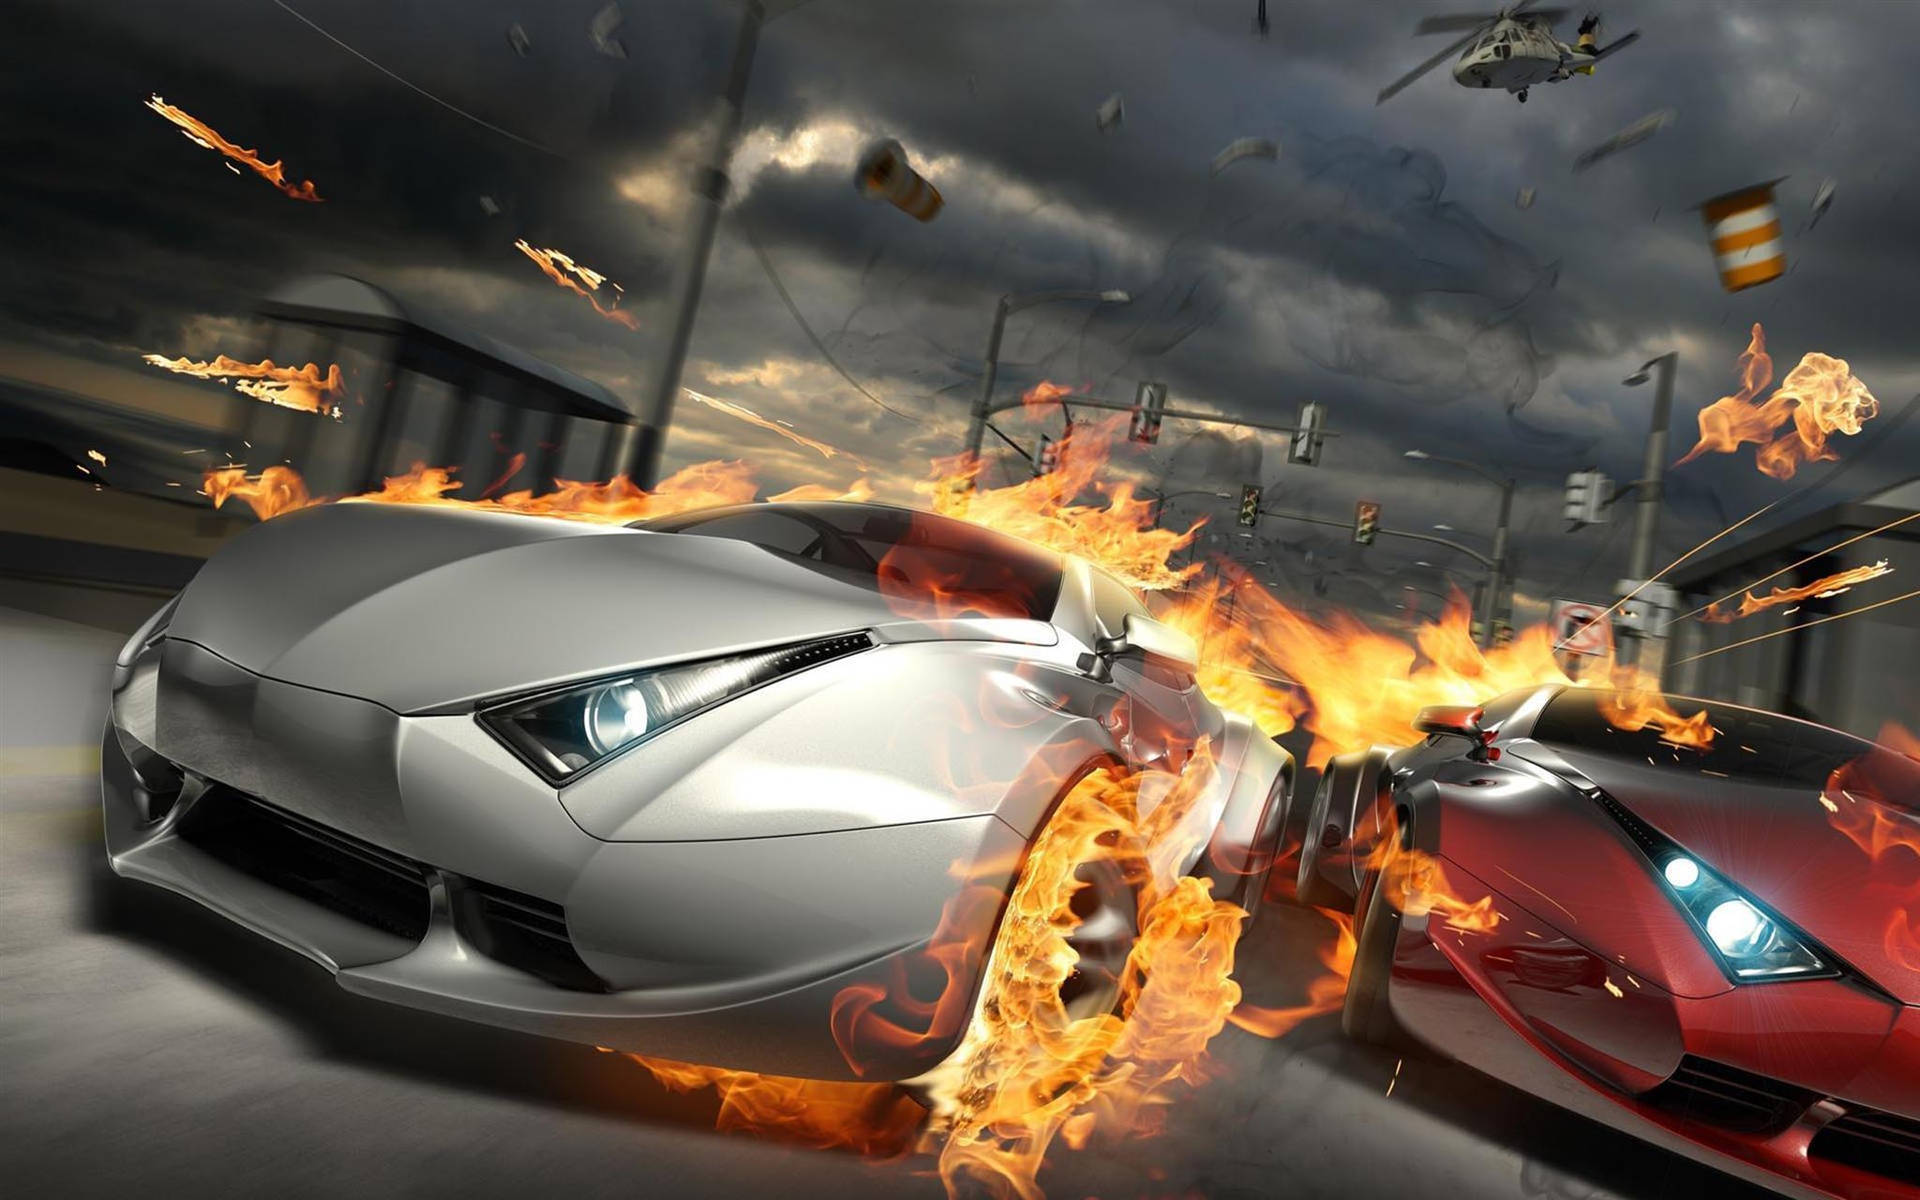 Cool Cars Fiery Race Wallpaper